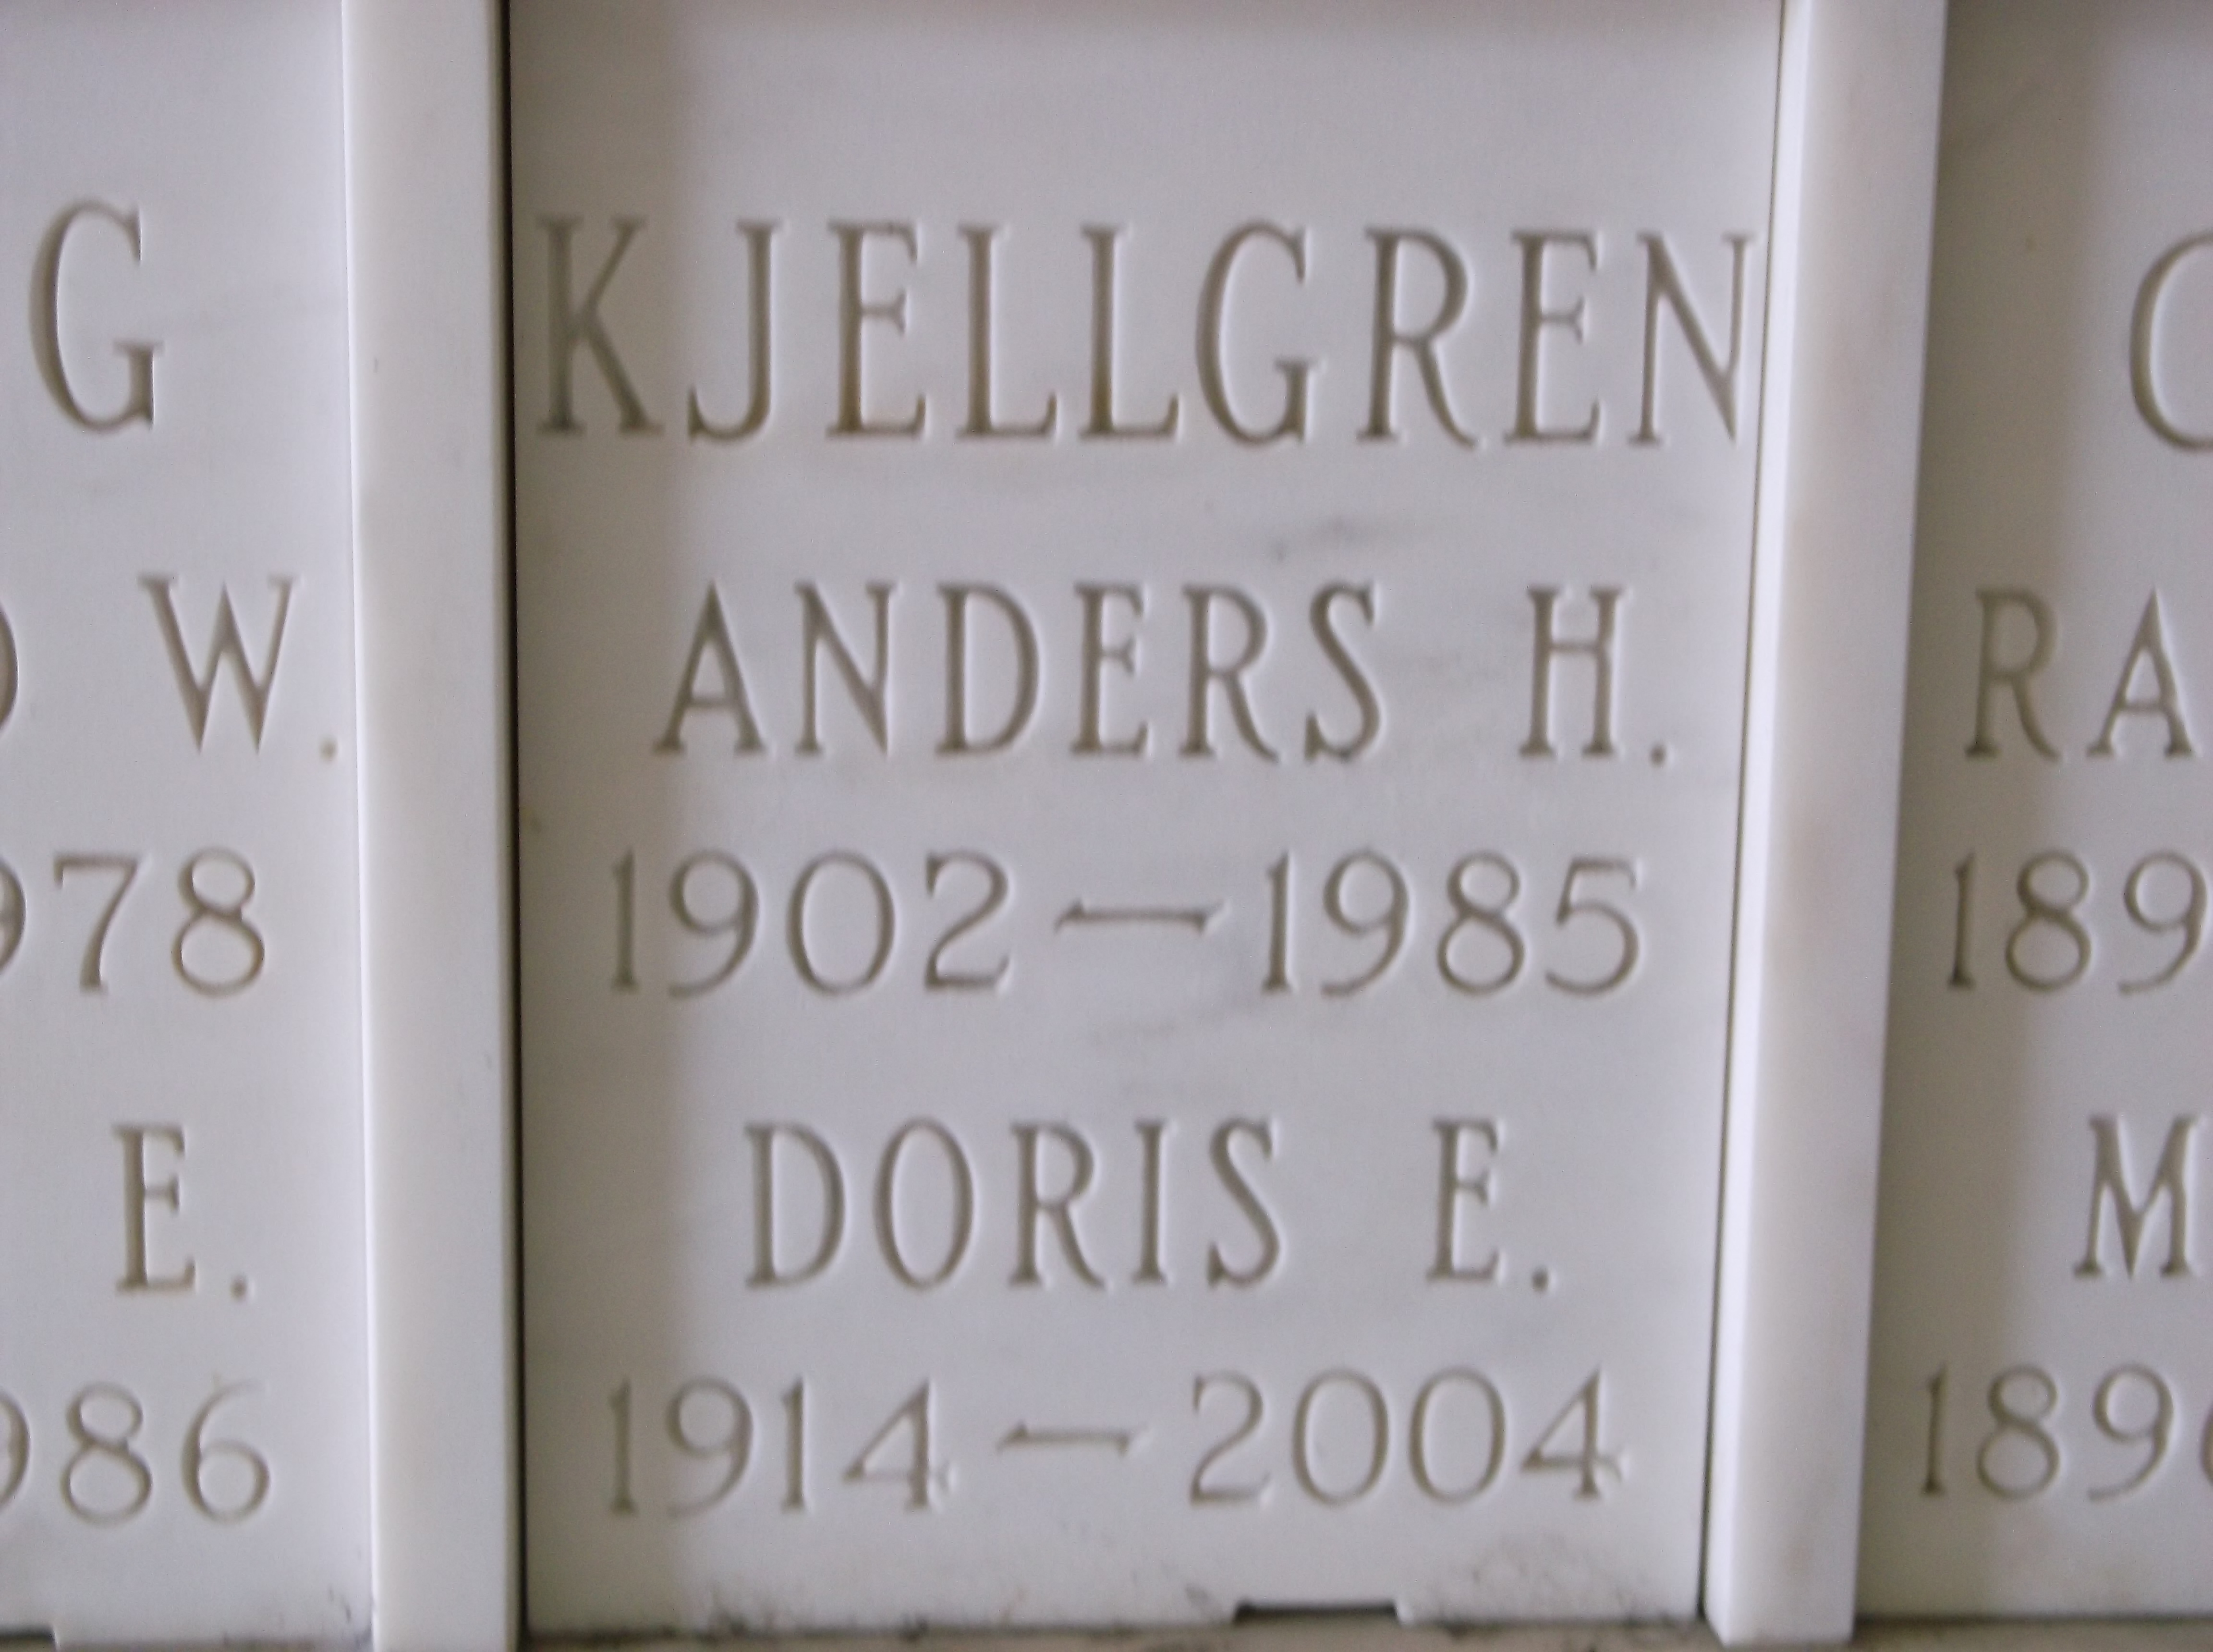 Anders H Kjellgren